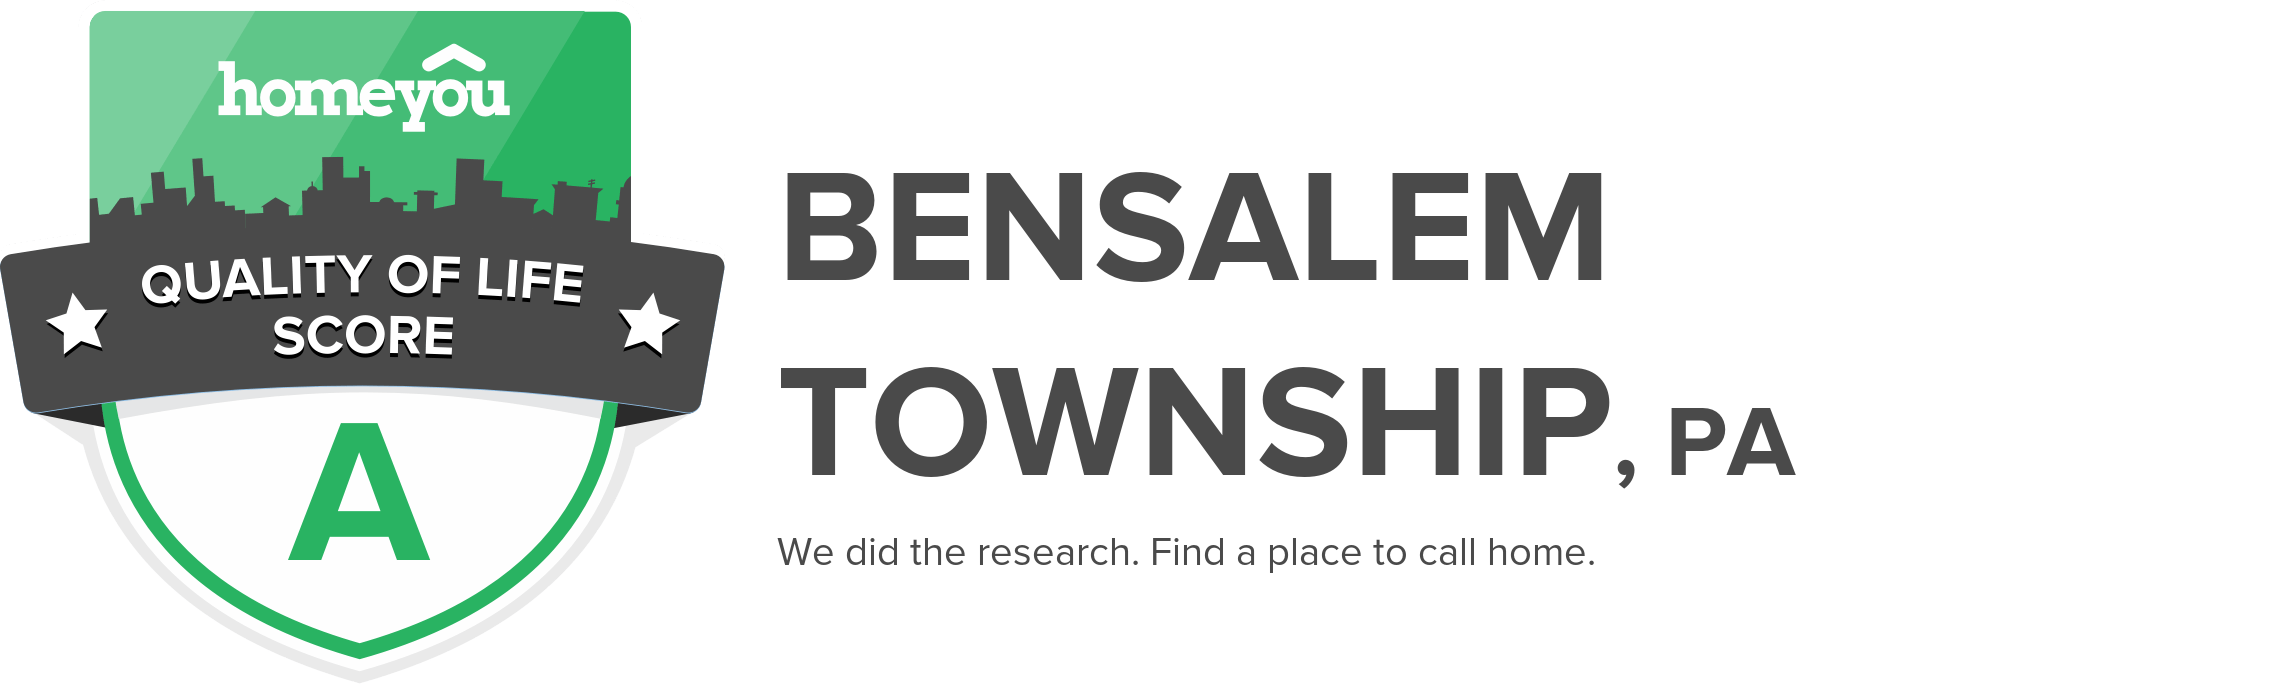 Bensalem township, PA